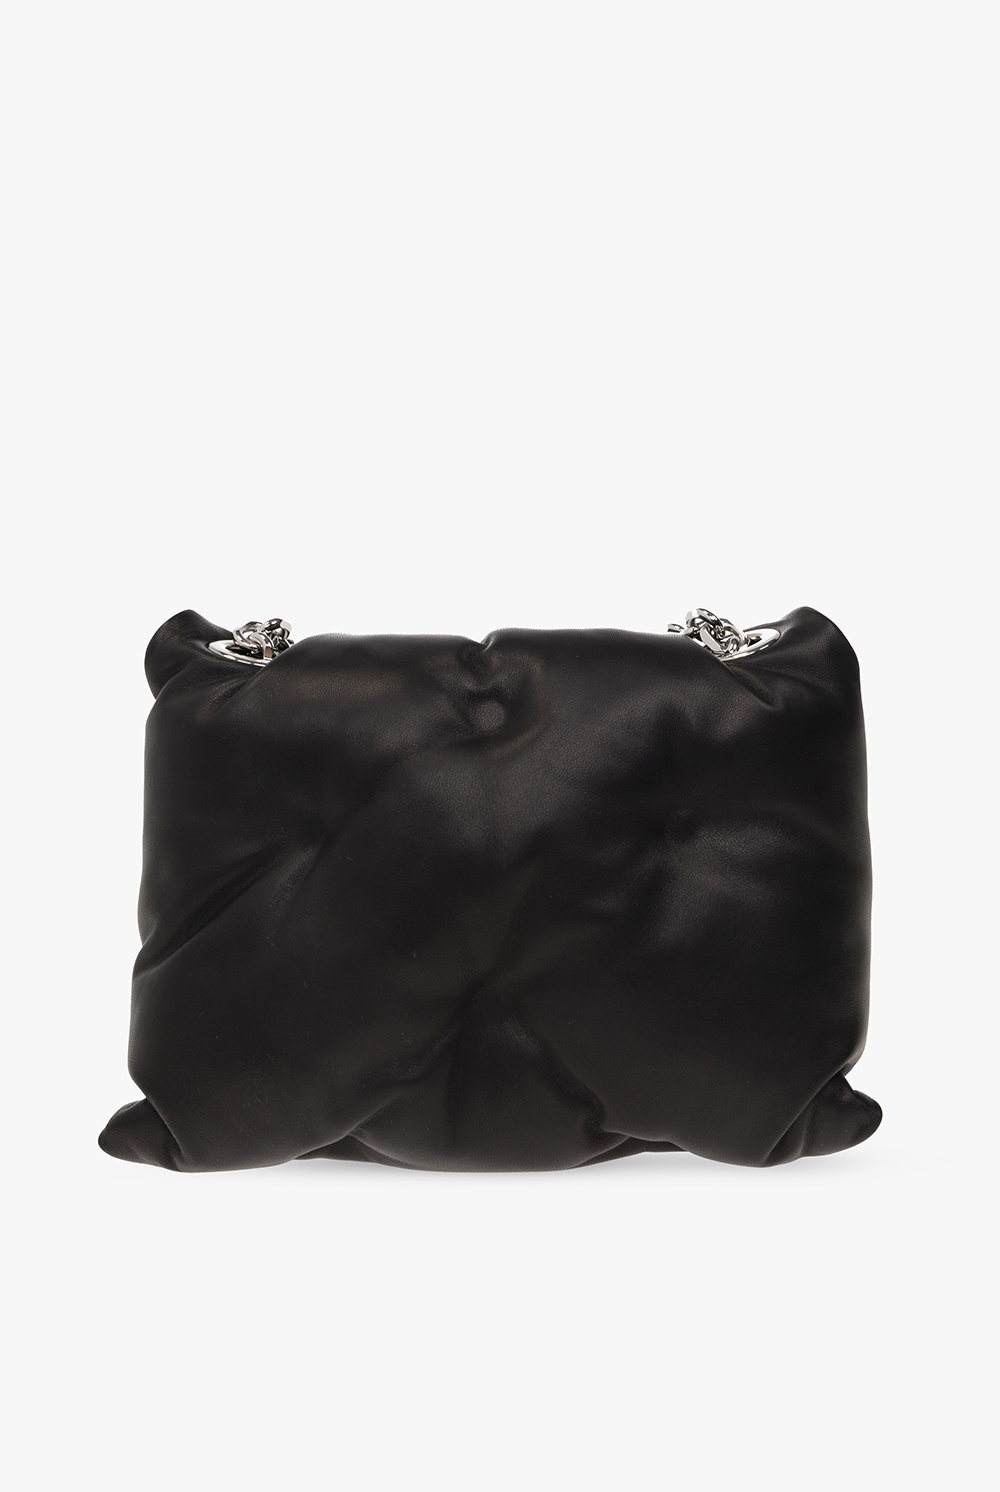 Maison Margiela 'Glam' shoulder bag